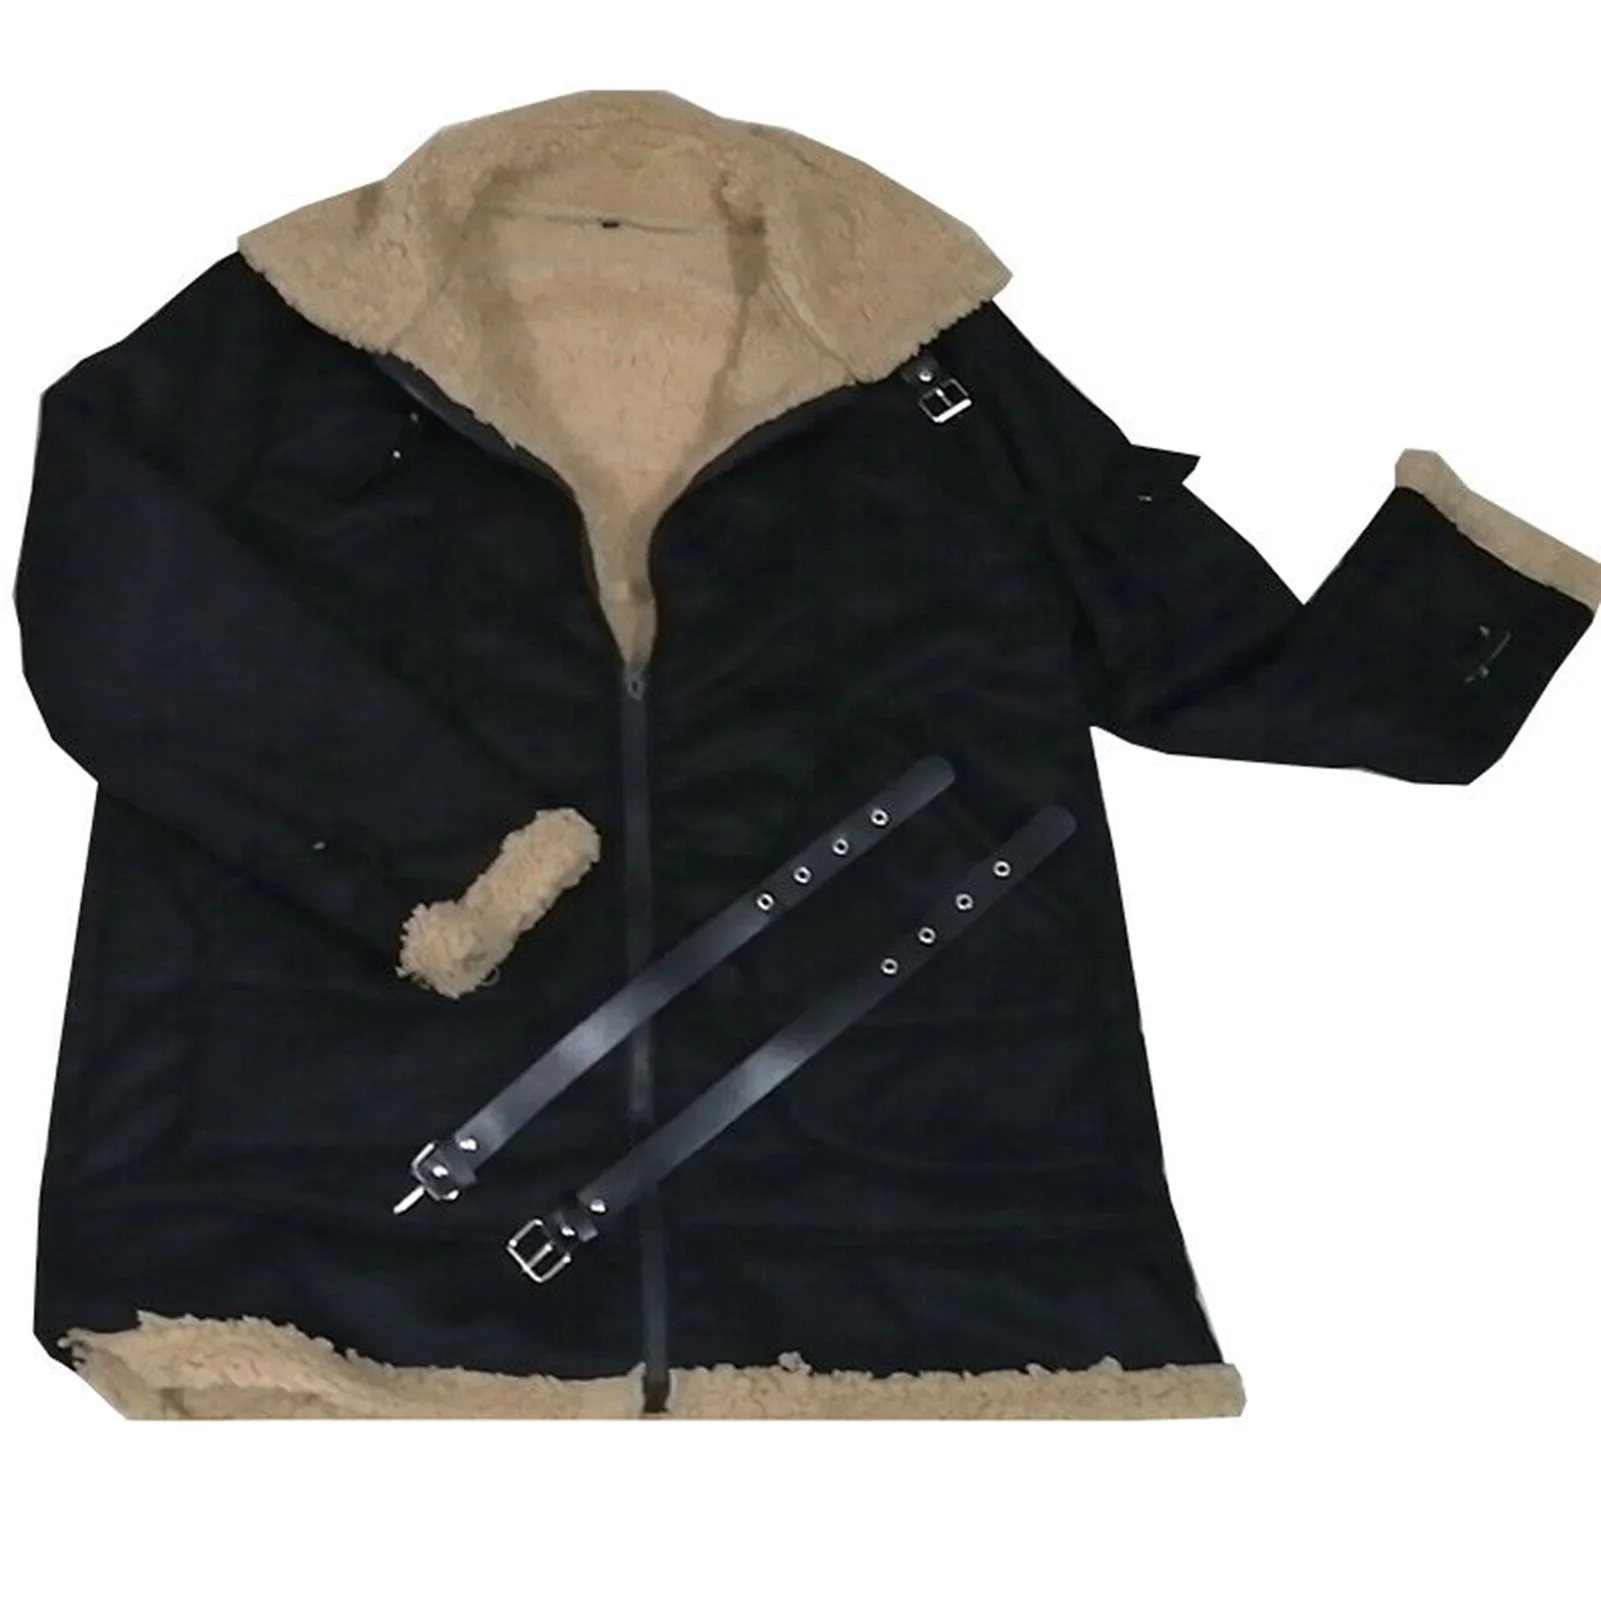 Приталенная кожаная куртка в стиле панк из высококачественного волокна в подарок на День рождения